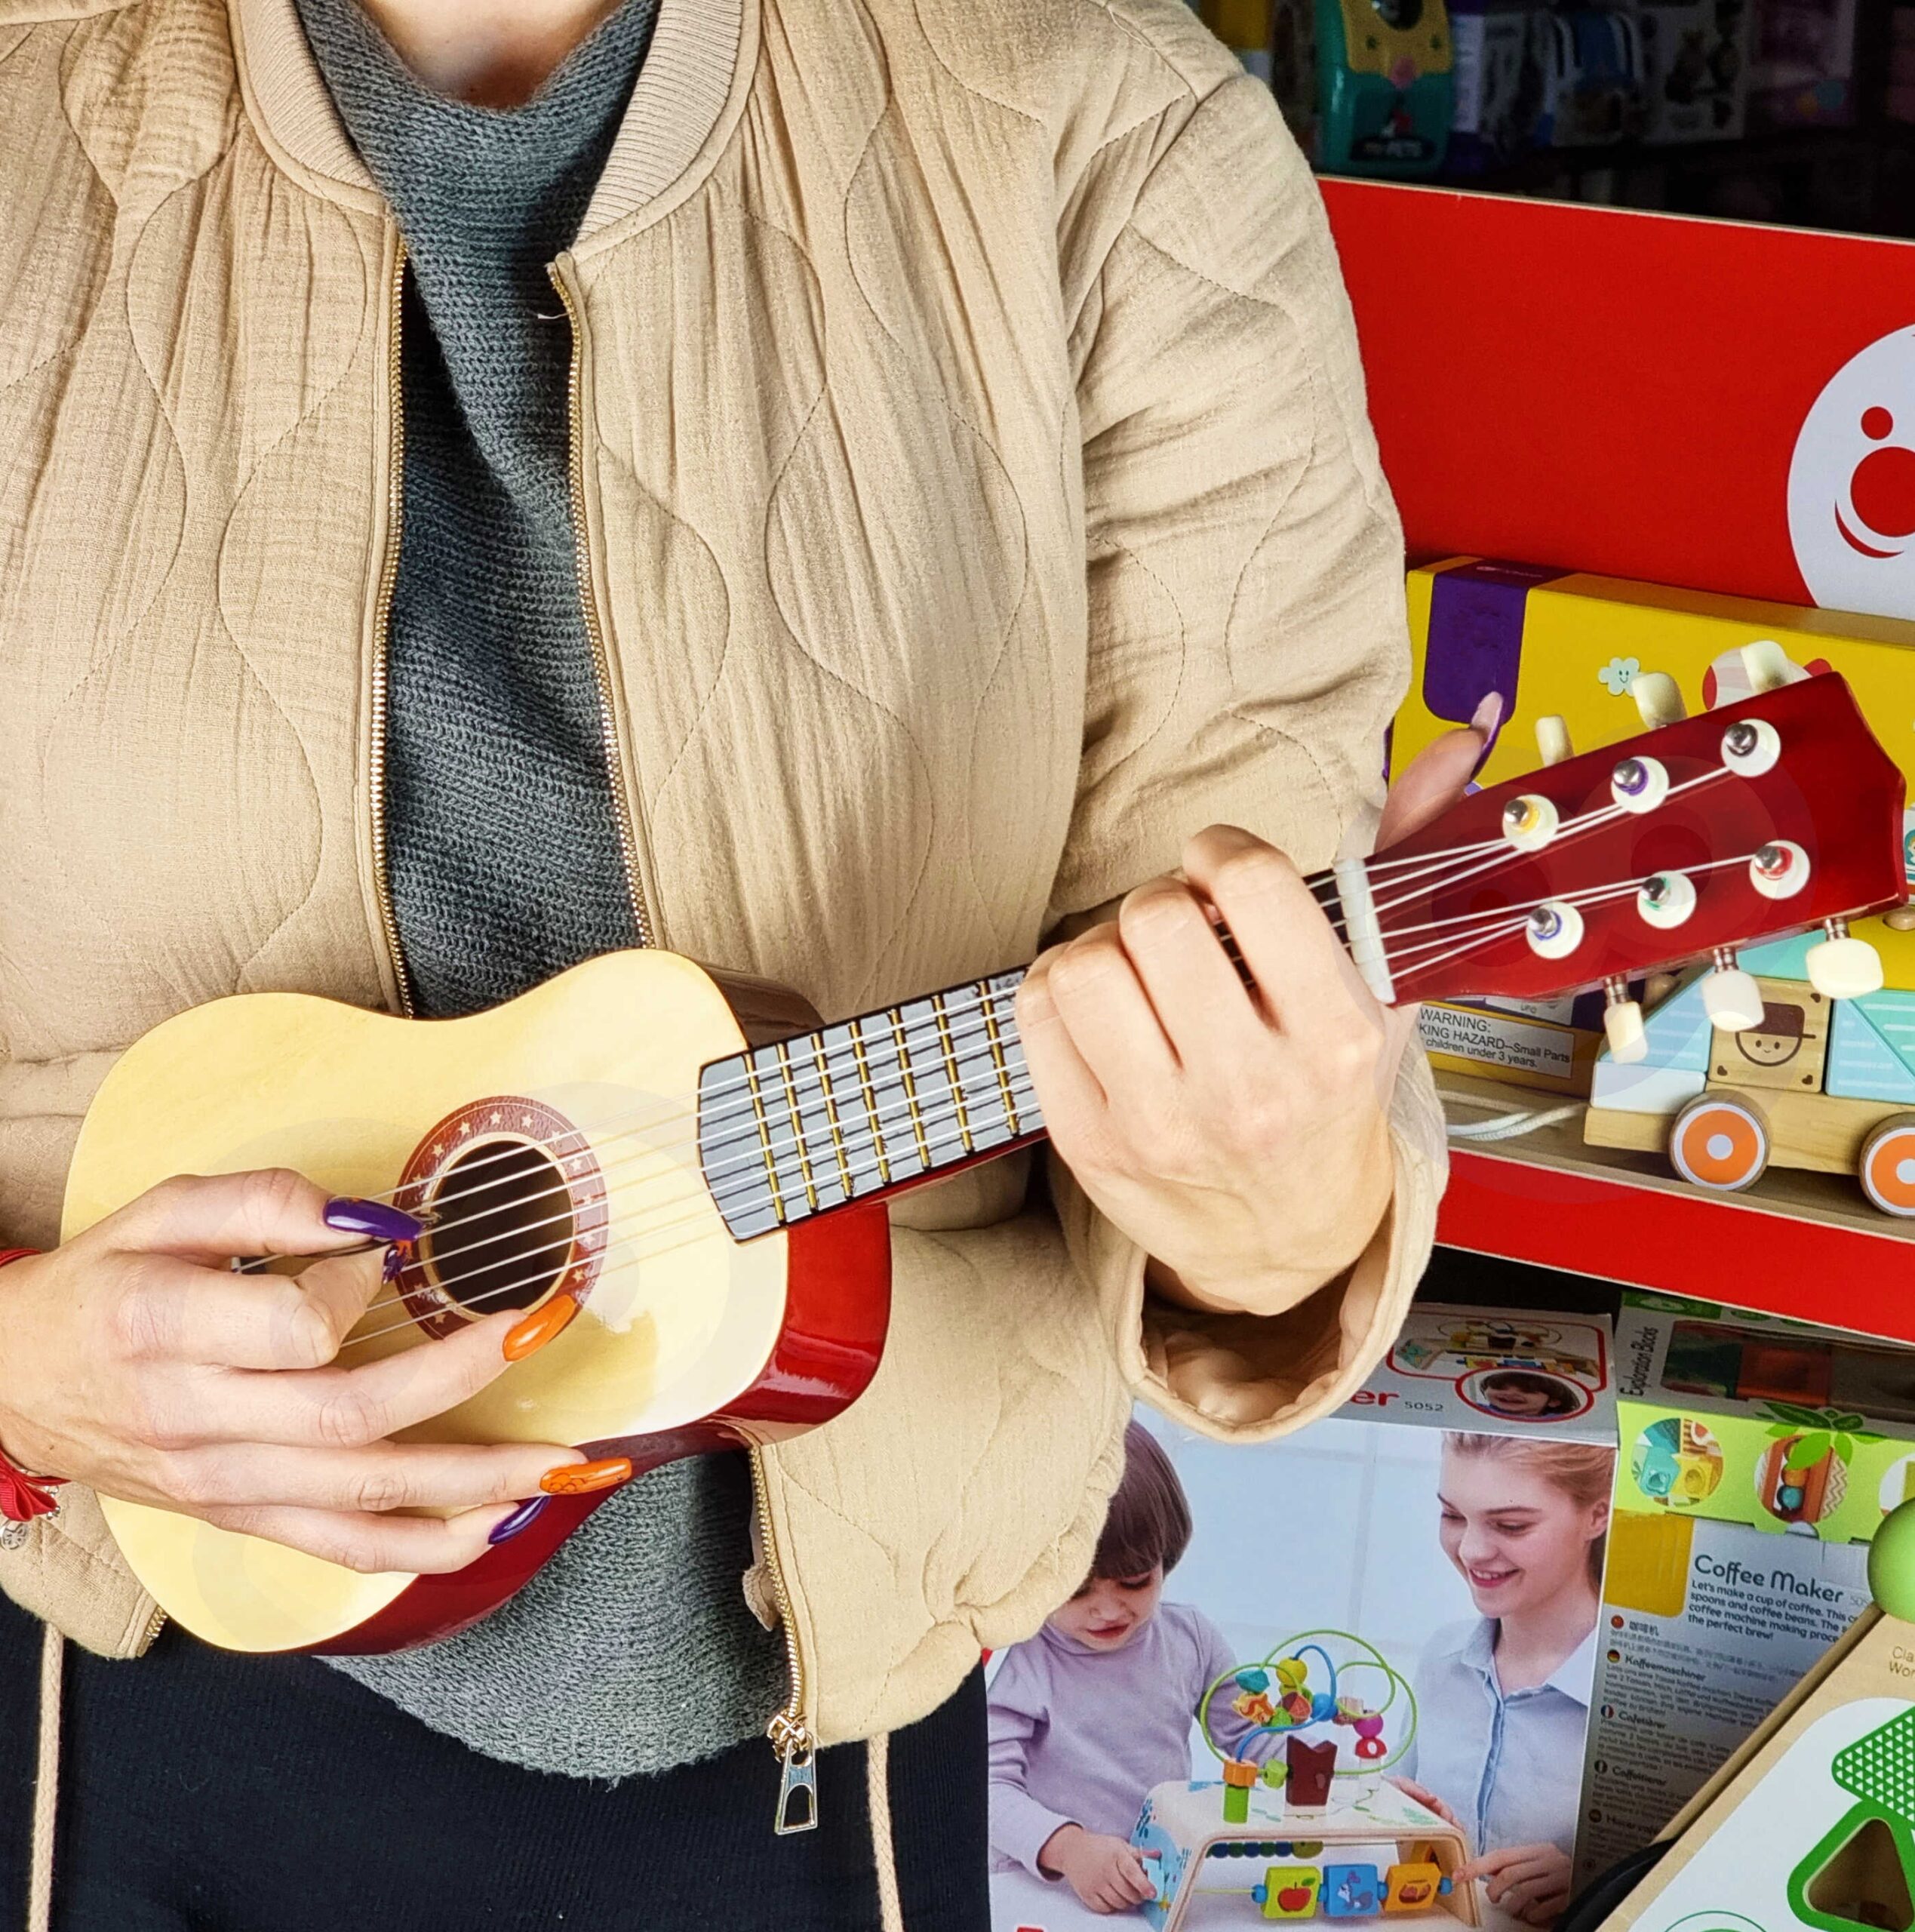 Drewniana gitara dla dzieci naturalna 21 cali 6 strun, zabawka dla dzieci, Viga